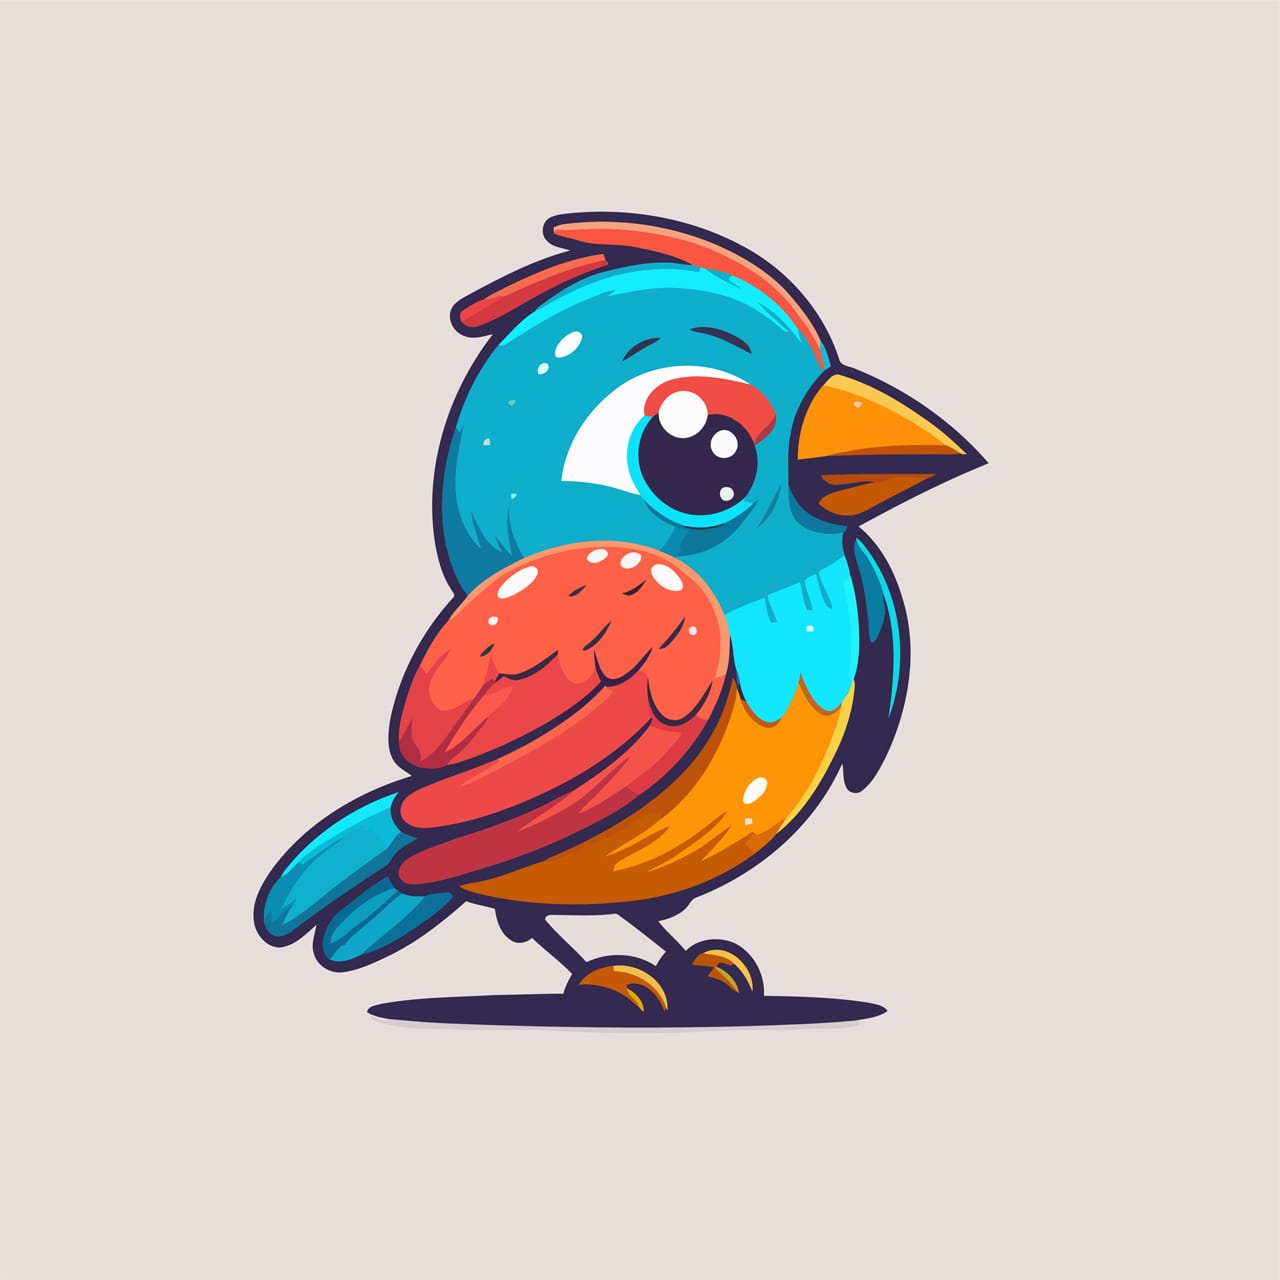 Avatar clipart cute little bird cartoon animal illustration logo mascot icon